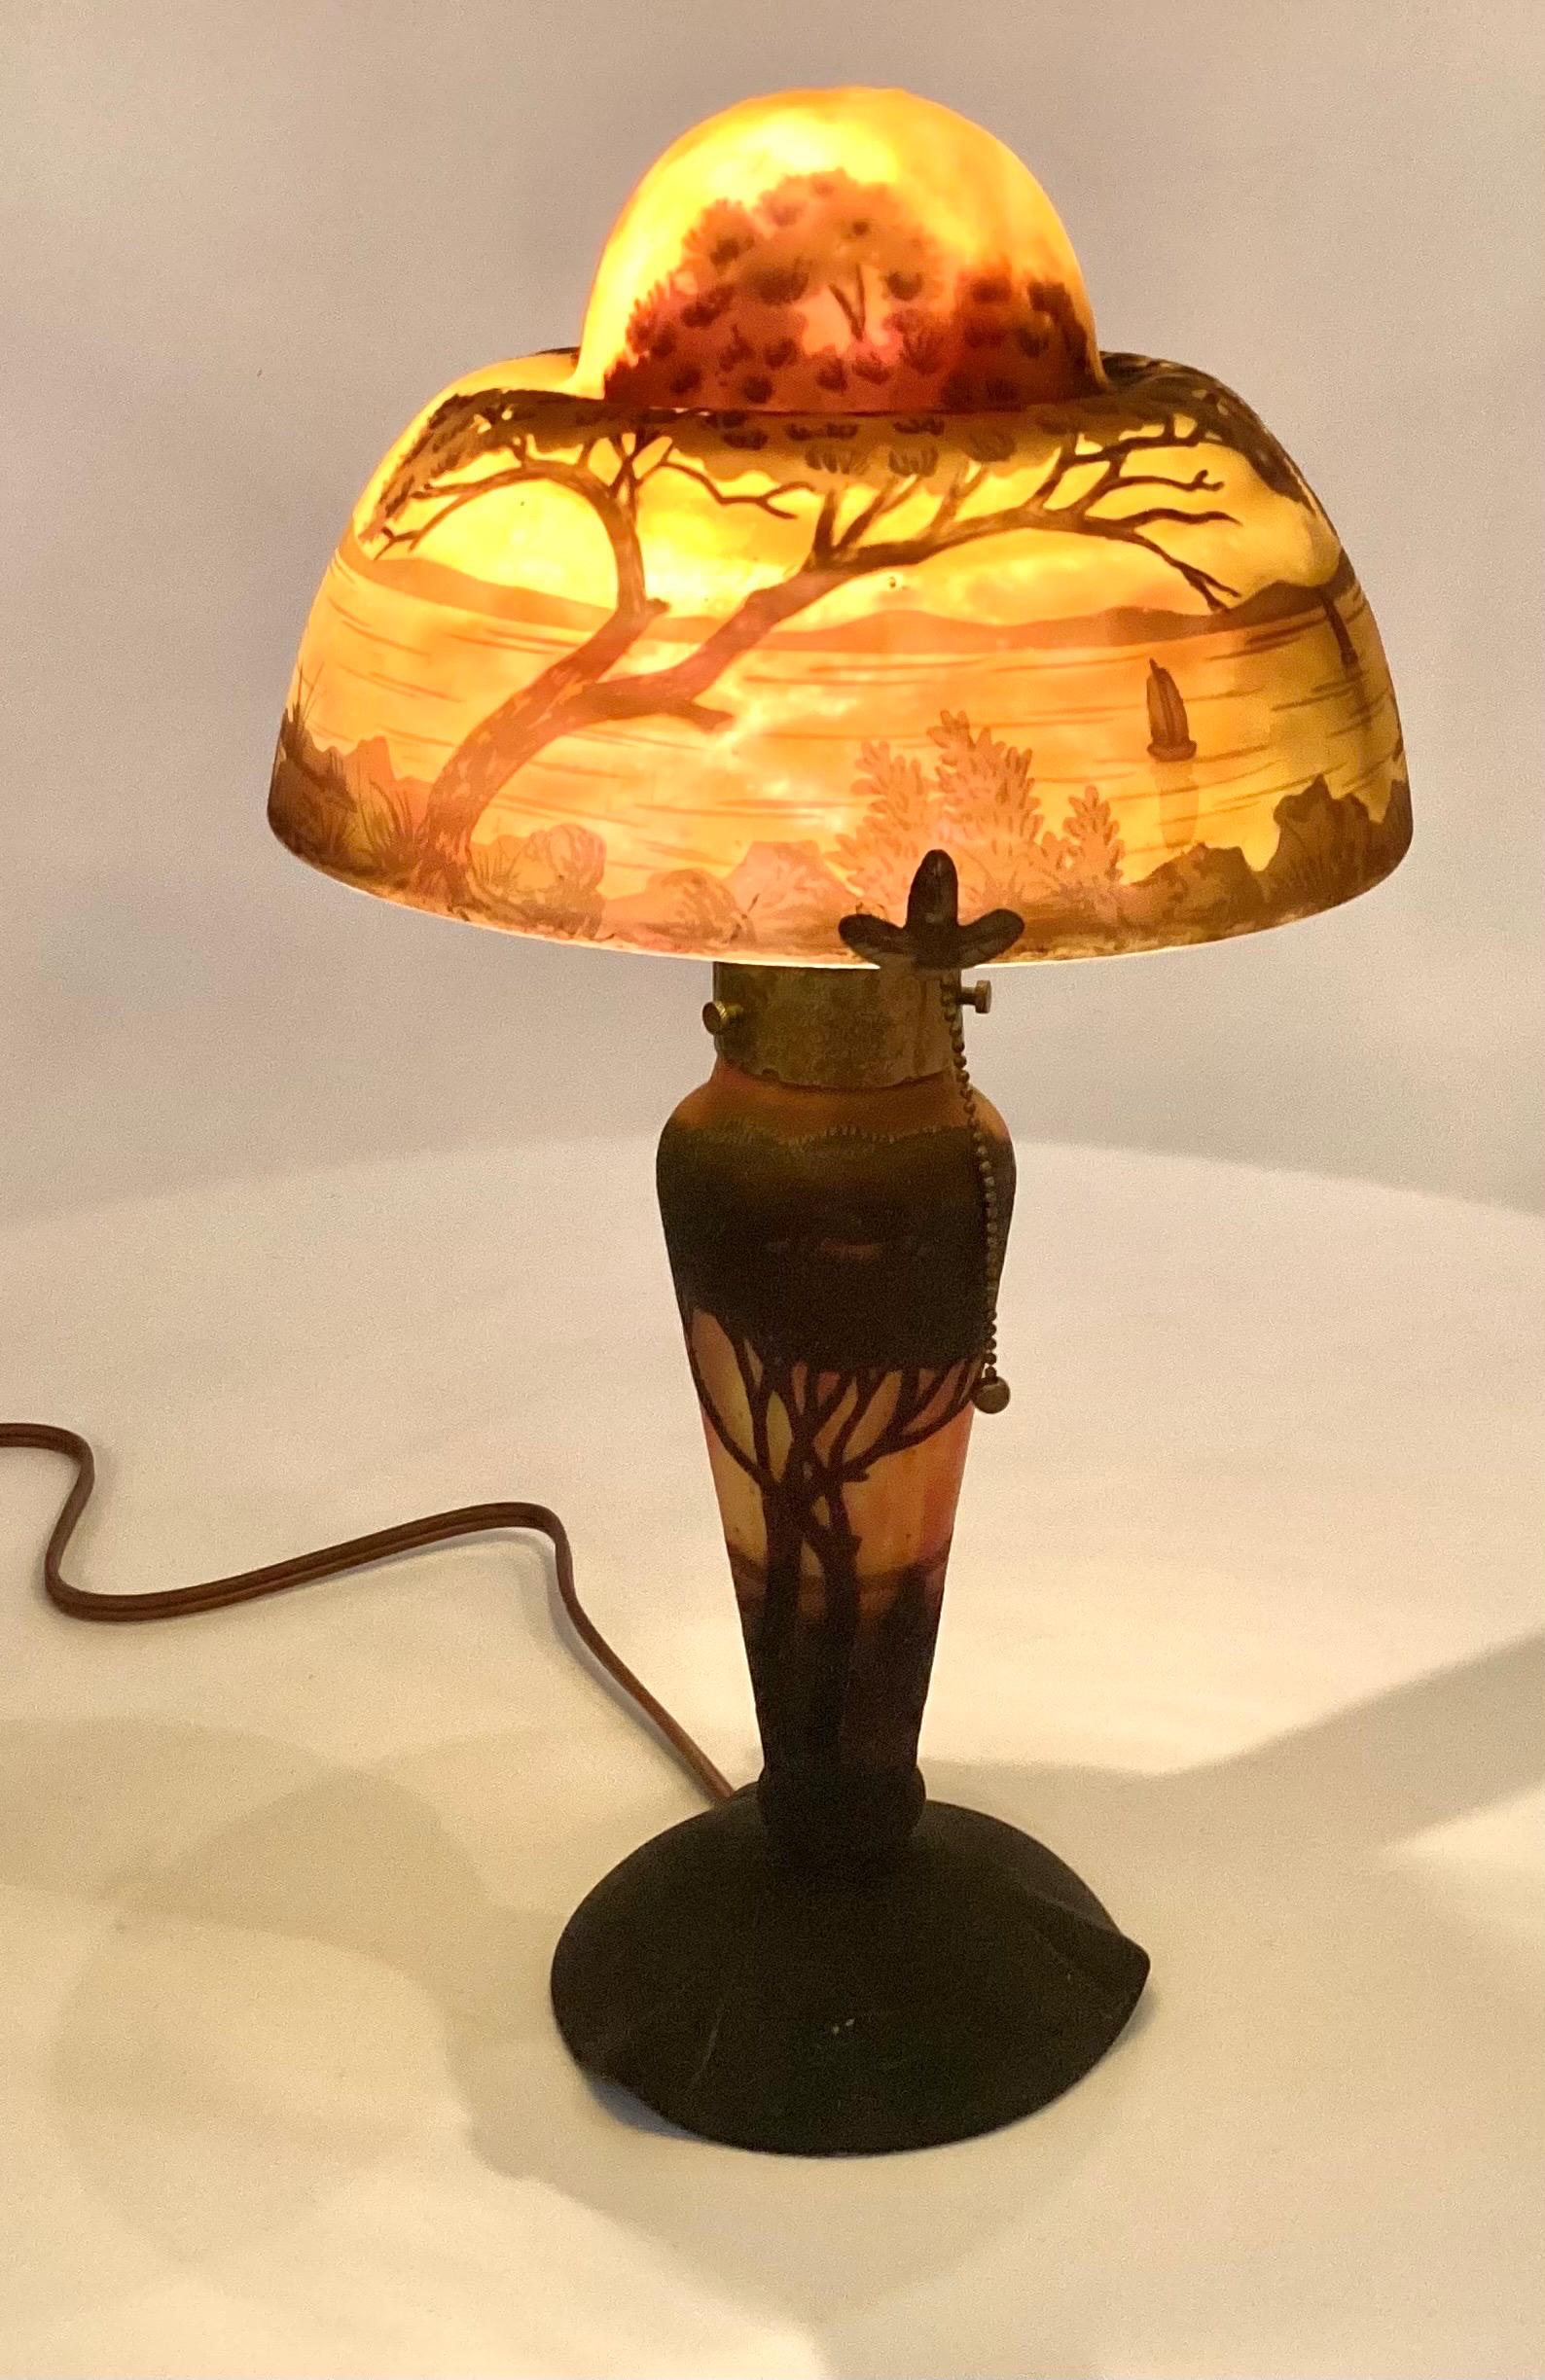 Une lampe de table originale de Daum Nancy en verre camée coloré. La superposition de couleurs sombres contraste avec le fond orange sur or. L'ombre est une scène de lac tranquille avec deux grands arbres et 5 voiliers, la base représentant des